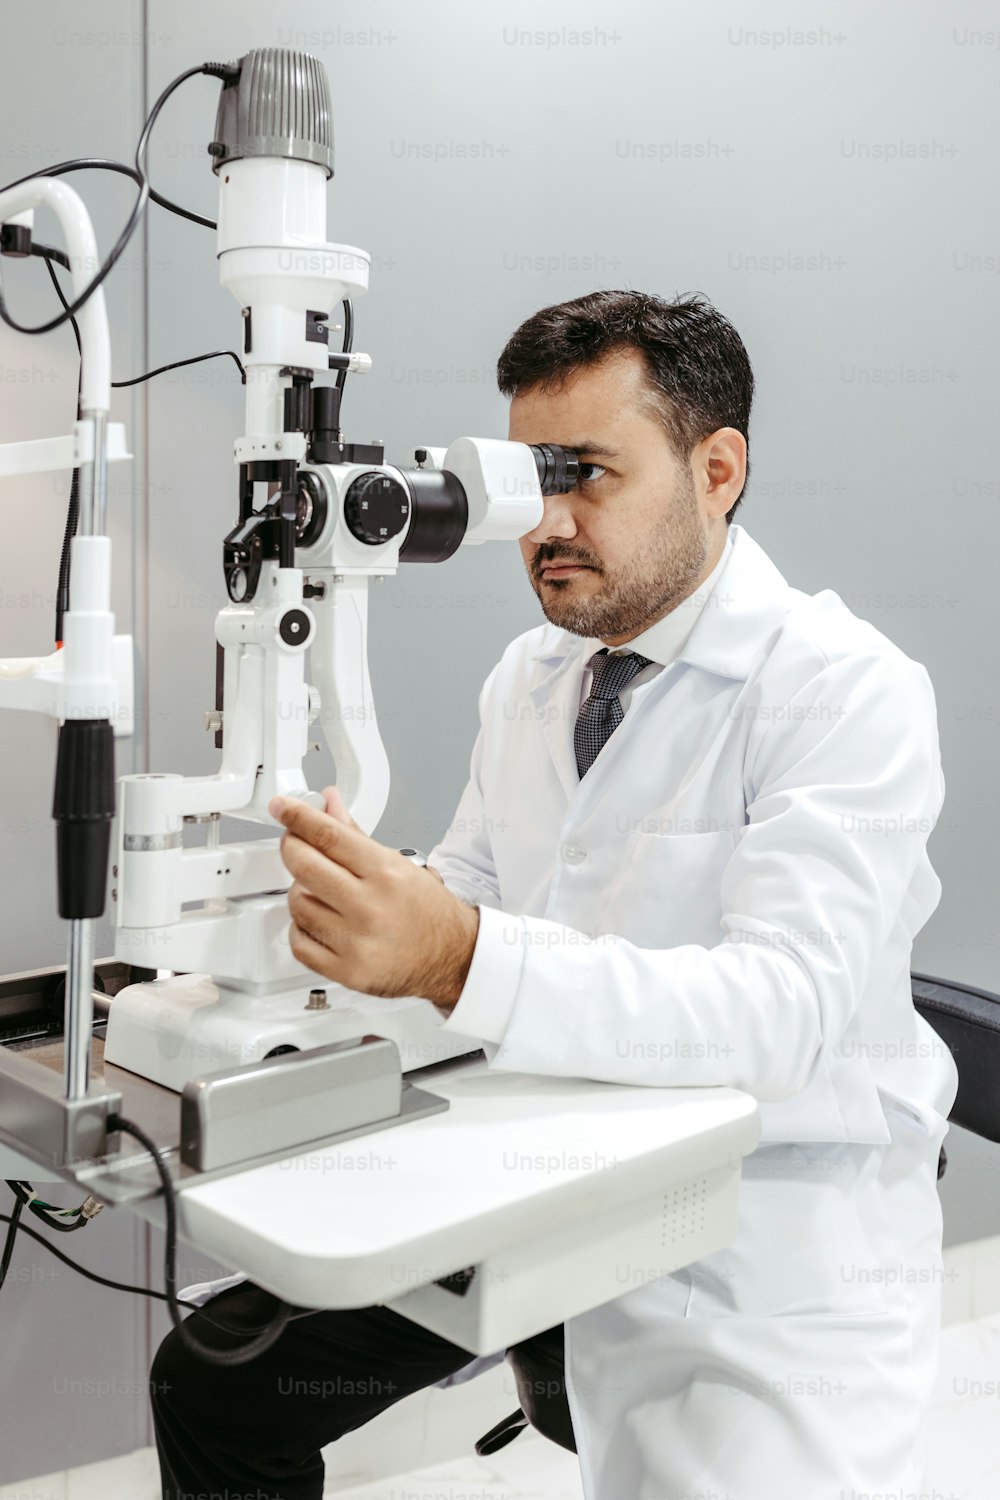 Un homme en blouse blanche regardant à travers un microscope